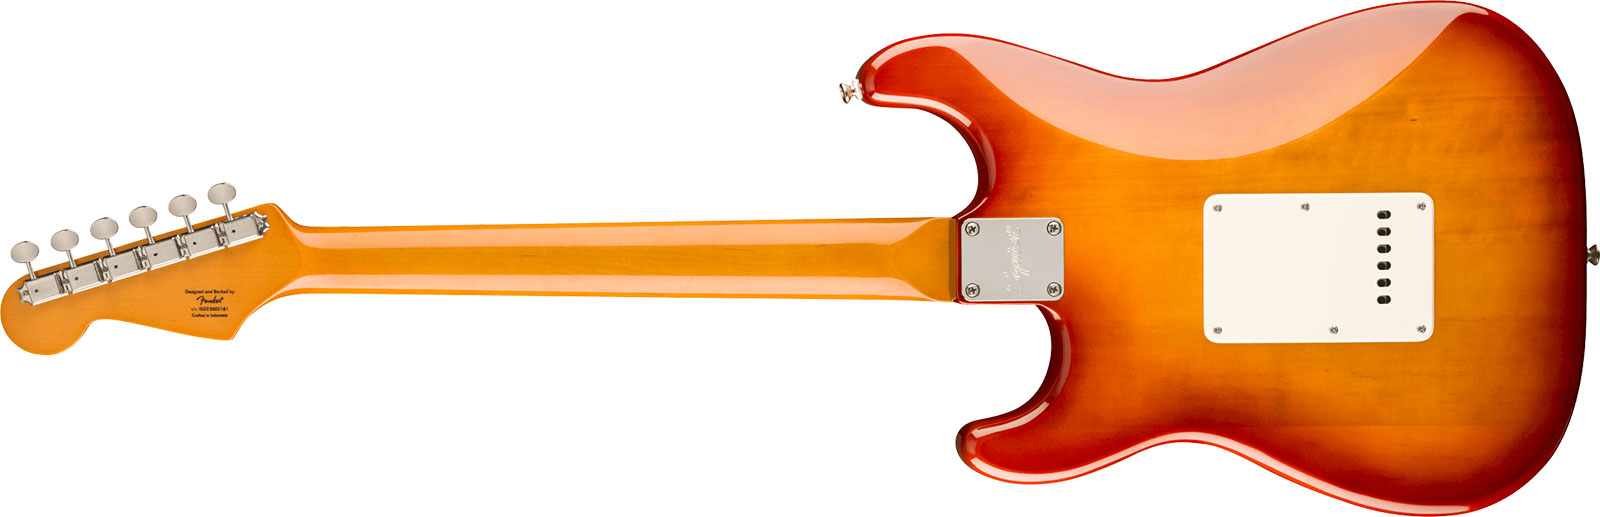 Squier Strat 60s Classic Vibe Ltd Hss Trem Lau - Sienna Sunburst - Elektrische gitaar in Str-vorm - Variation 1